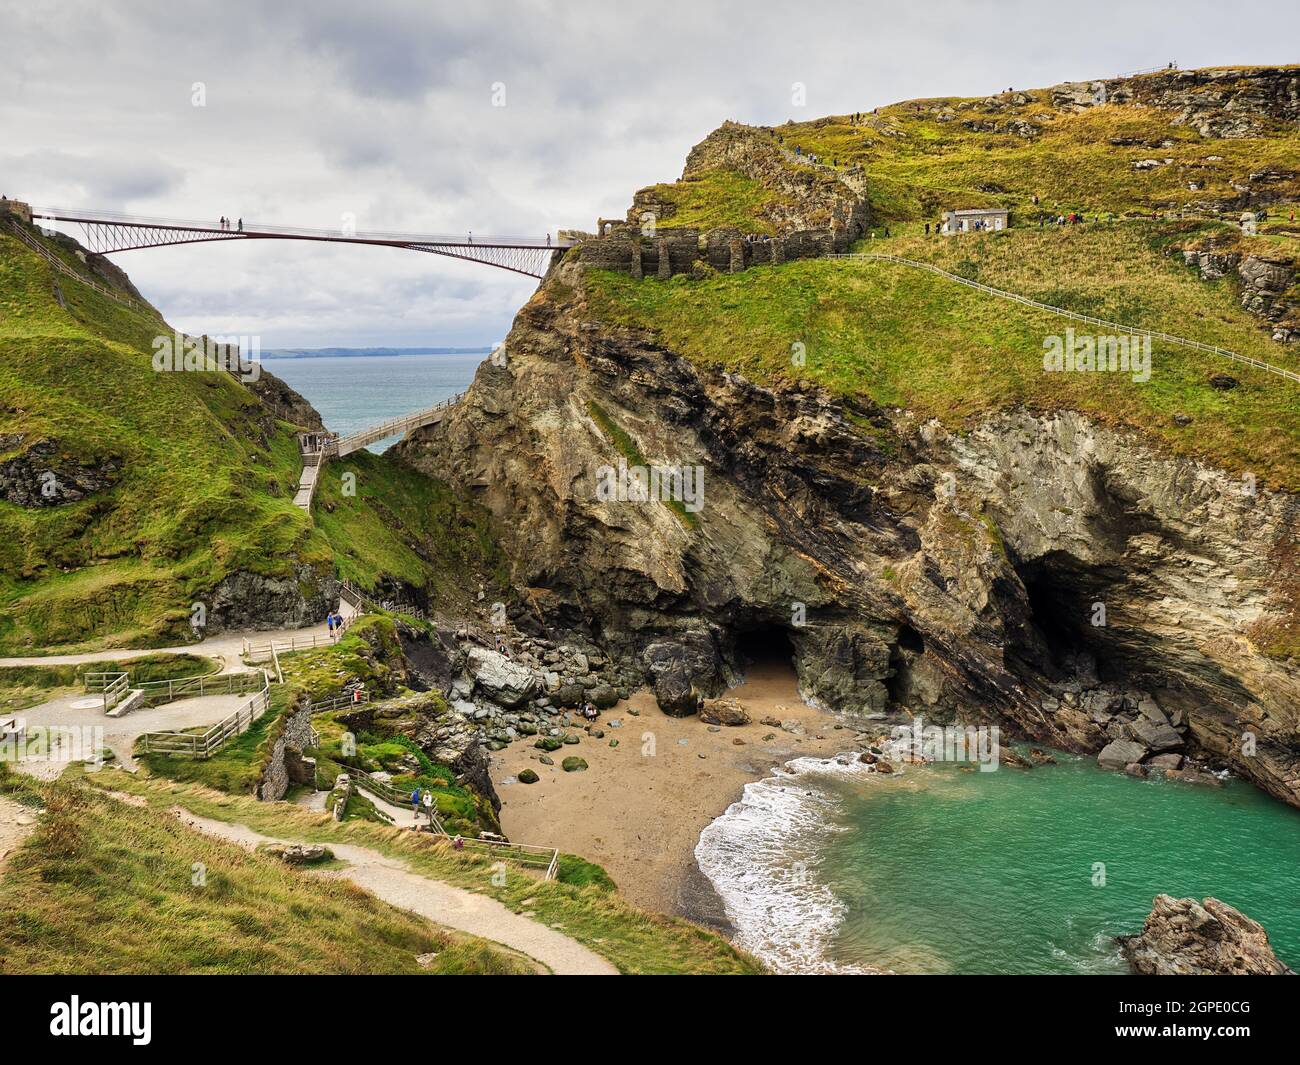 Ponte pedonale Tintagel con la Grotta di Merlin e la Cove Tintagel in primo piano. Foto Stock